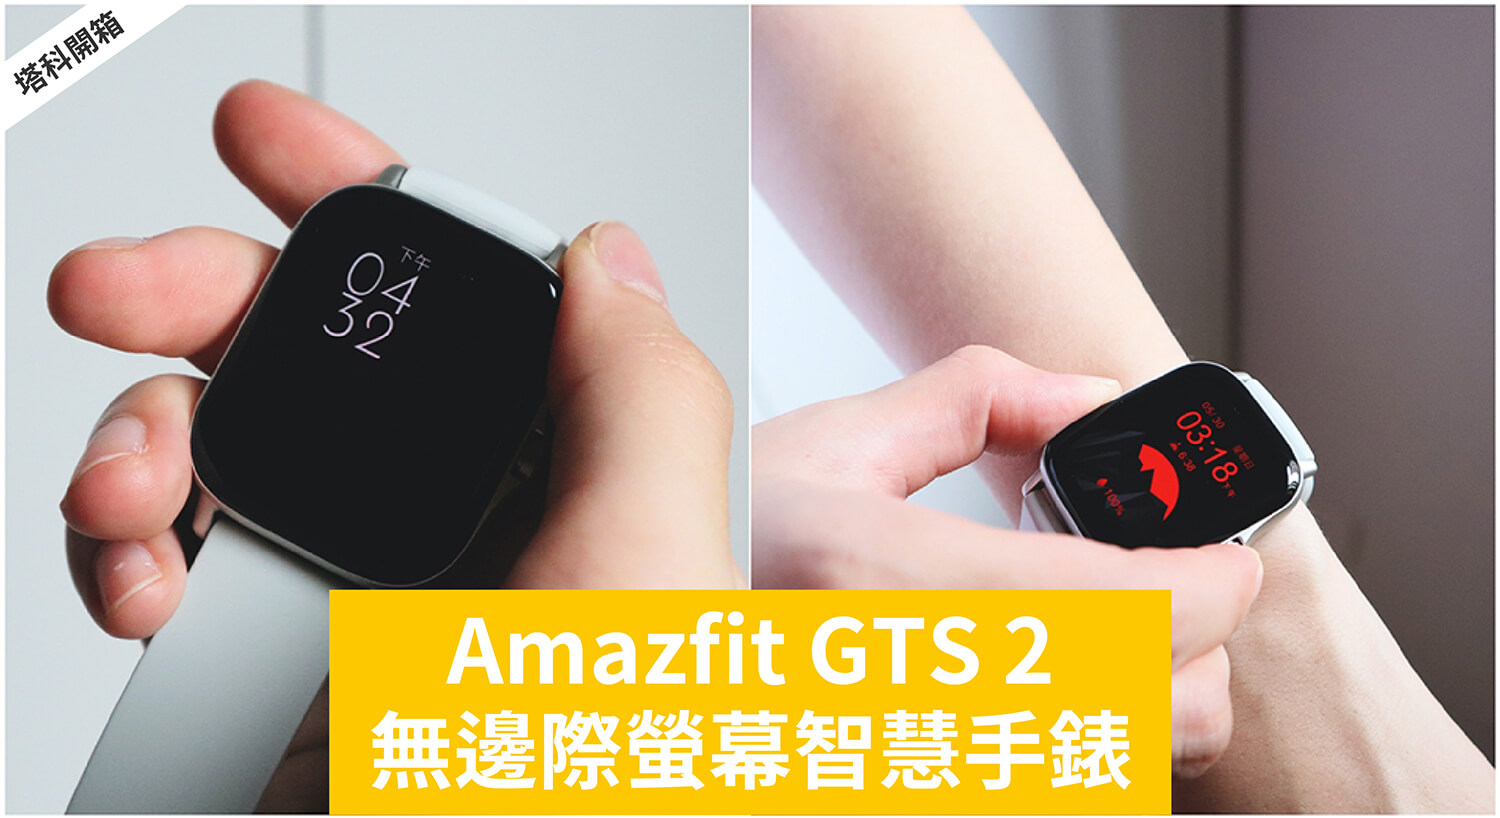 開箱】Amazfit GTS 2 智慧手錶：無邊際螢幕、美型多功能！ - 塔科女子